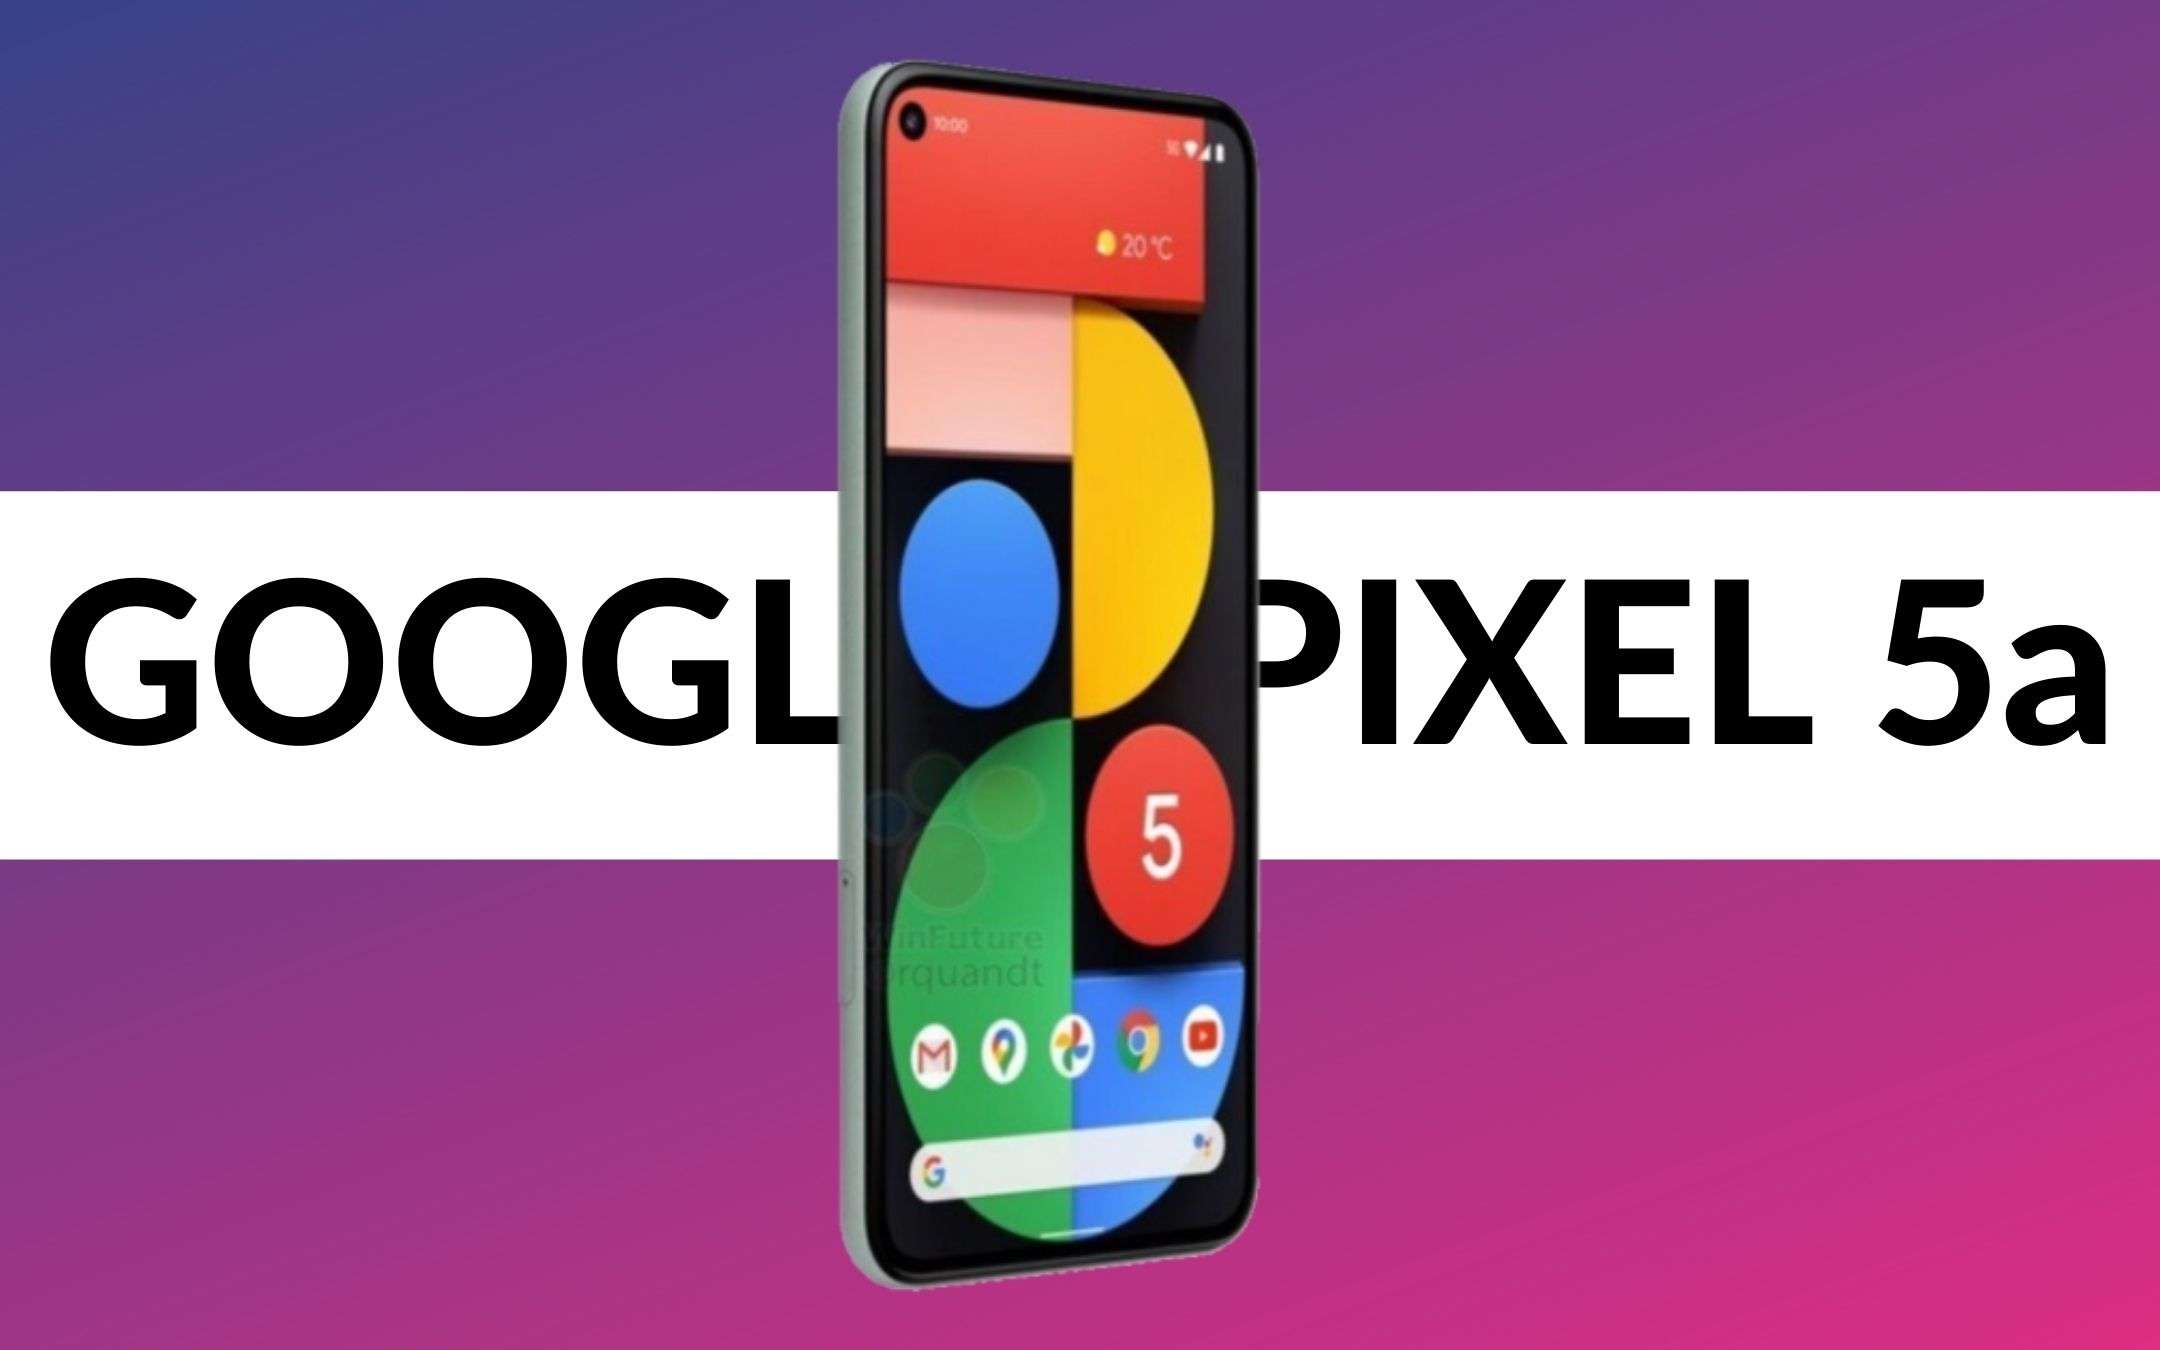 Google Pixel 5a potrebbe arrivare ad agosto